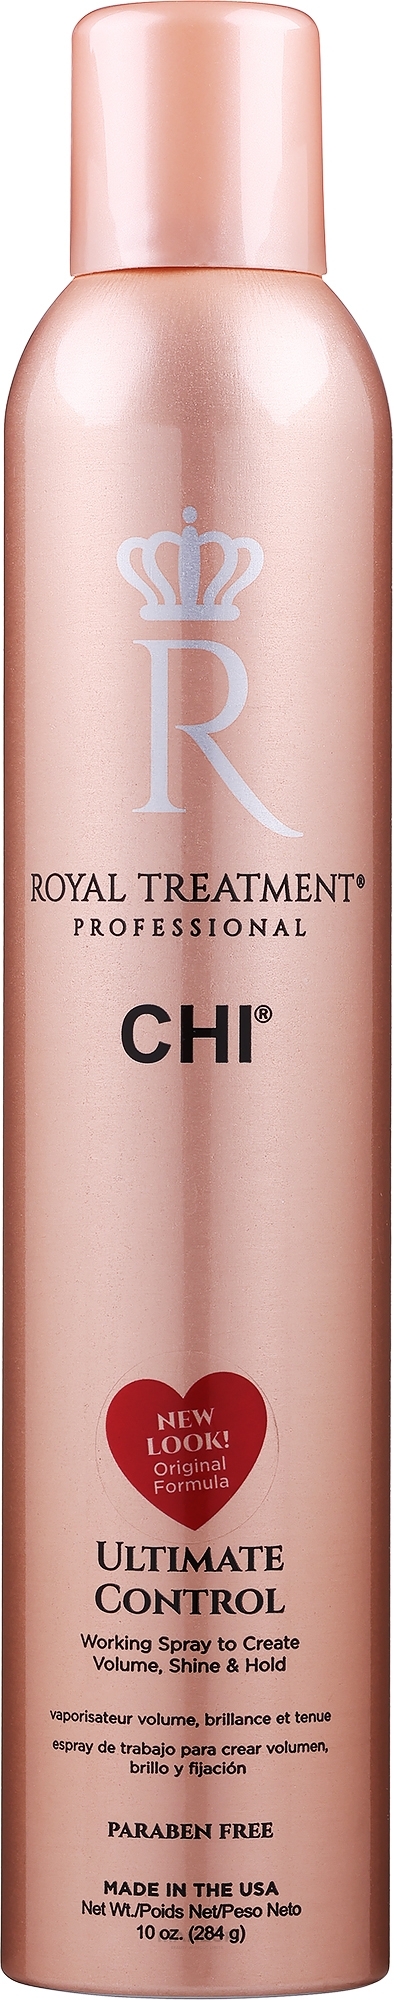 Szybkoschnący lakier zwiększający objętość włosów - CHI Farouk Royal Treatment by CHI Ultimate Control — Zdjęcie 284 g